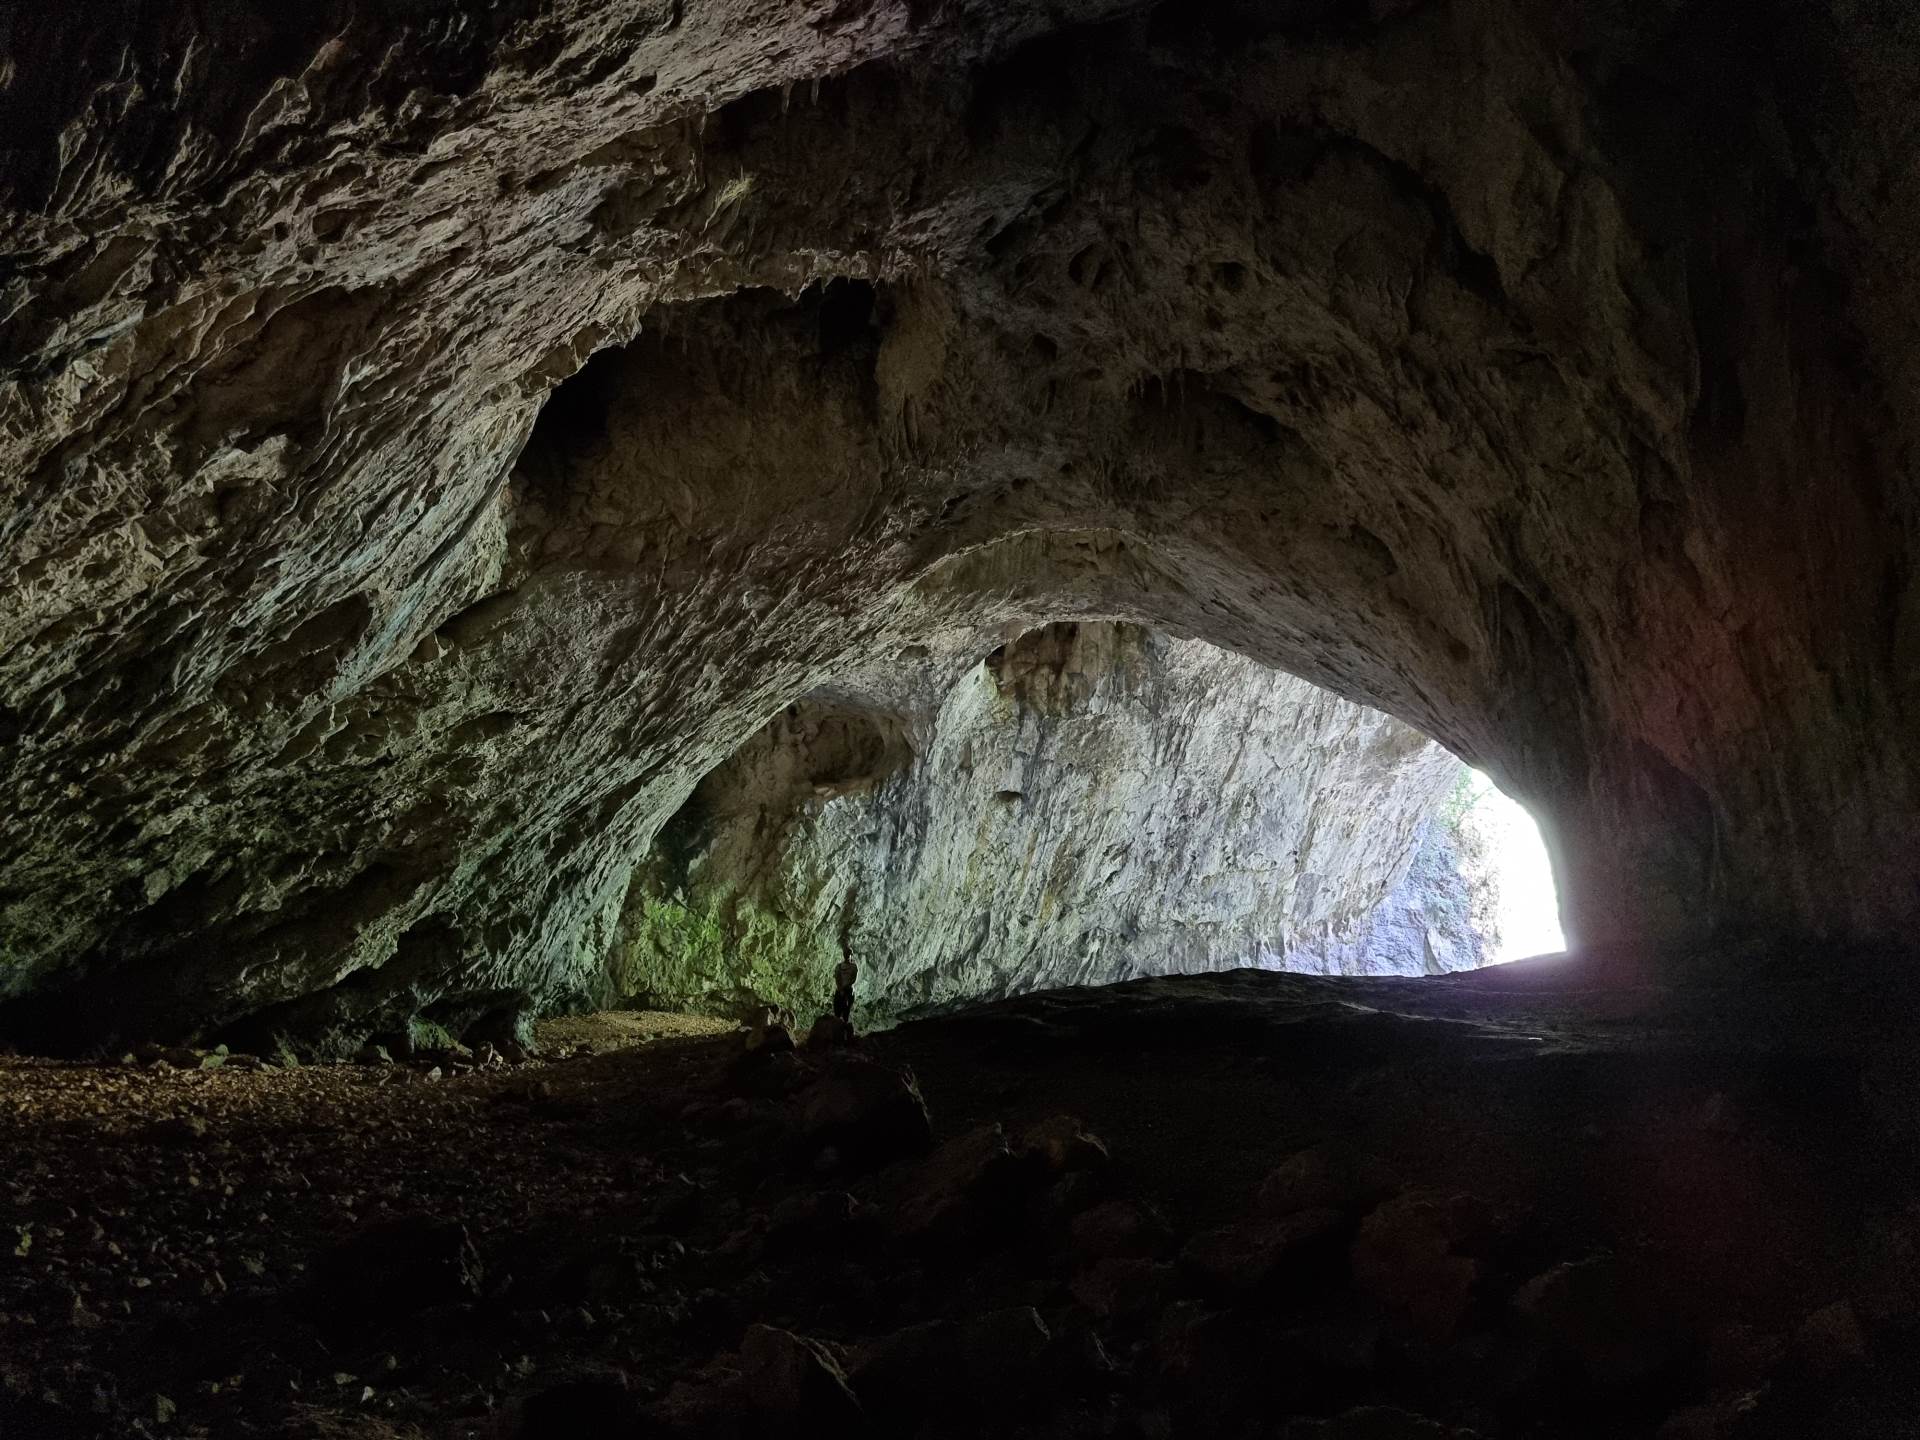  Reportaža o Dabarskoj pećini kod Sanskog Mosta 